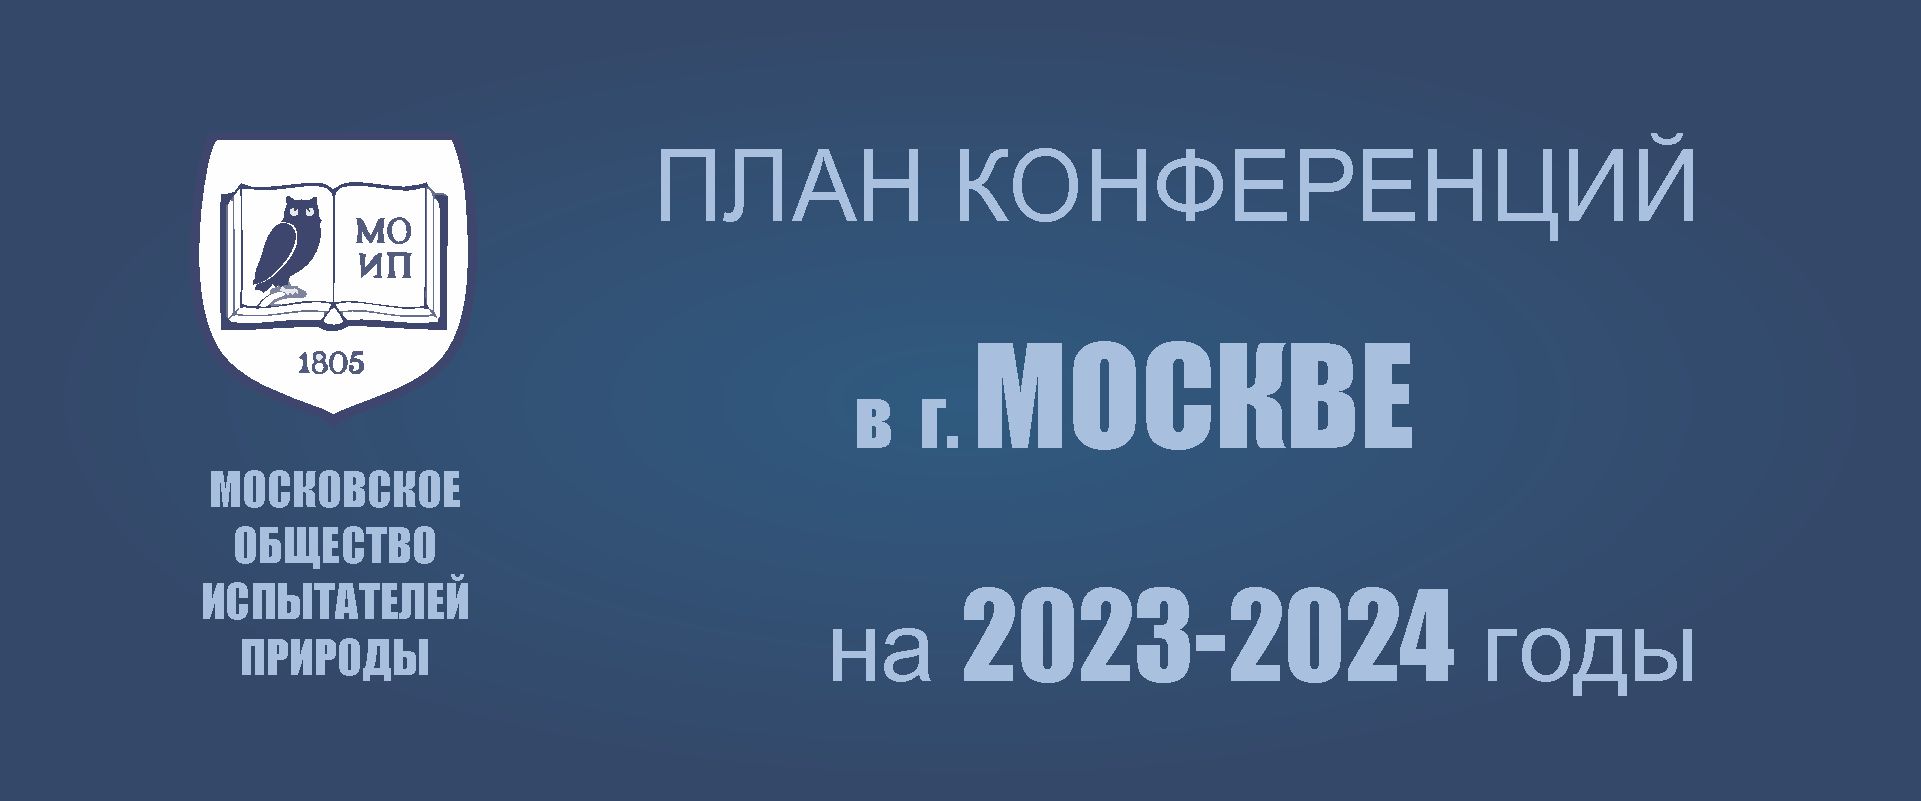 ПРЕДСТОЯЩИЕ КОНФЕРЕНЦИИ В МОСКВЕ в 2023-2024 г.г.